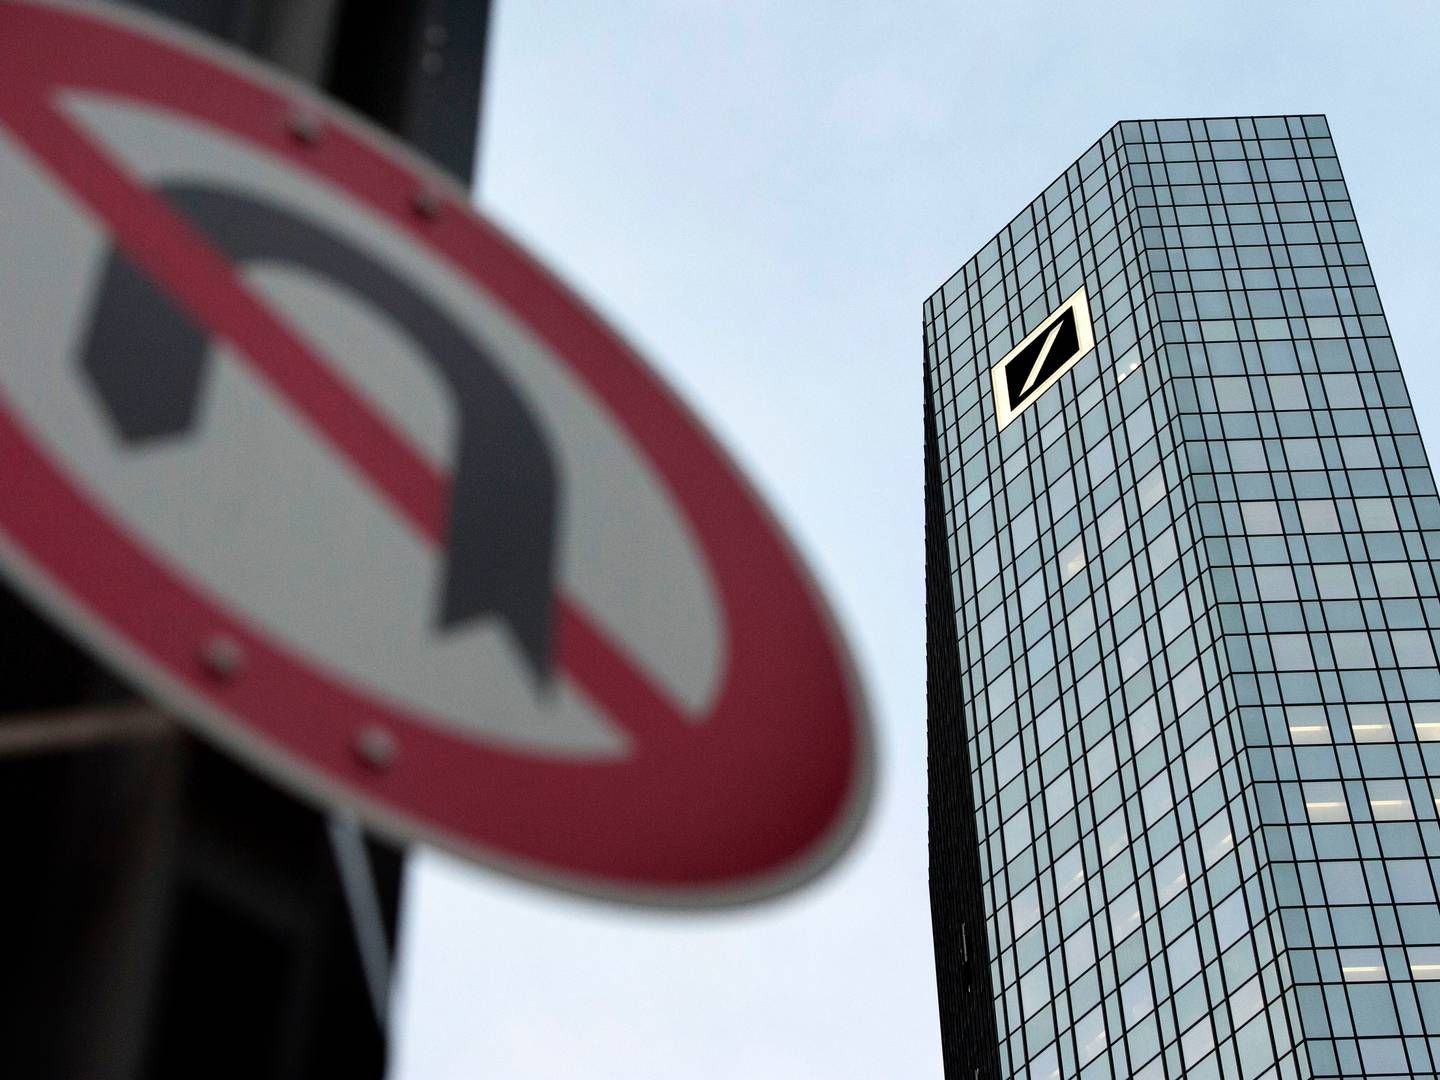 Einer der beiden Tower der Deutschen Bank in Frankfurt | Foto: picture alliance / SvenSimon | Malte Ossowski/SVEN SIMON